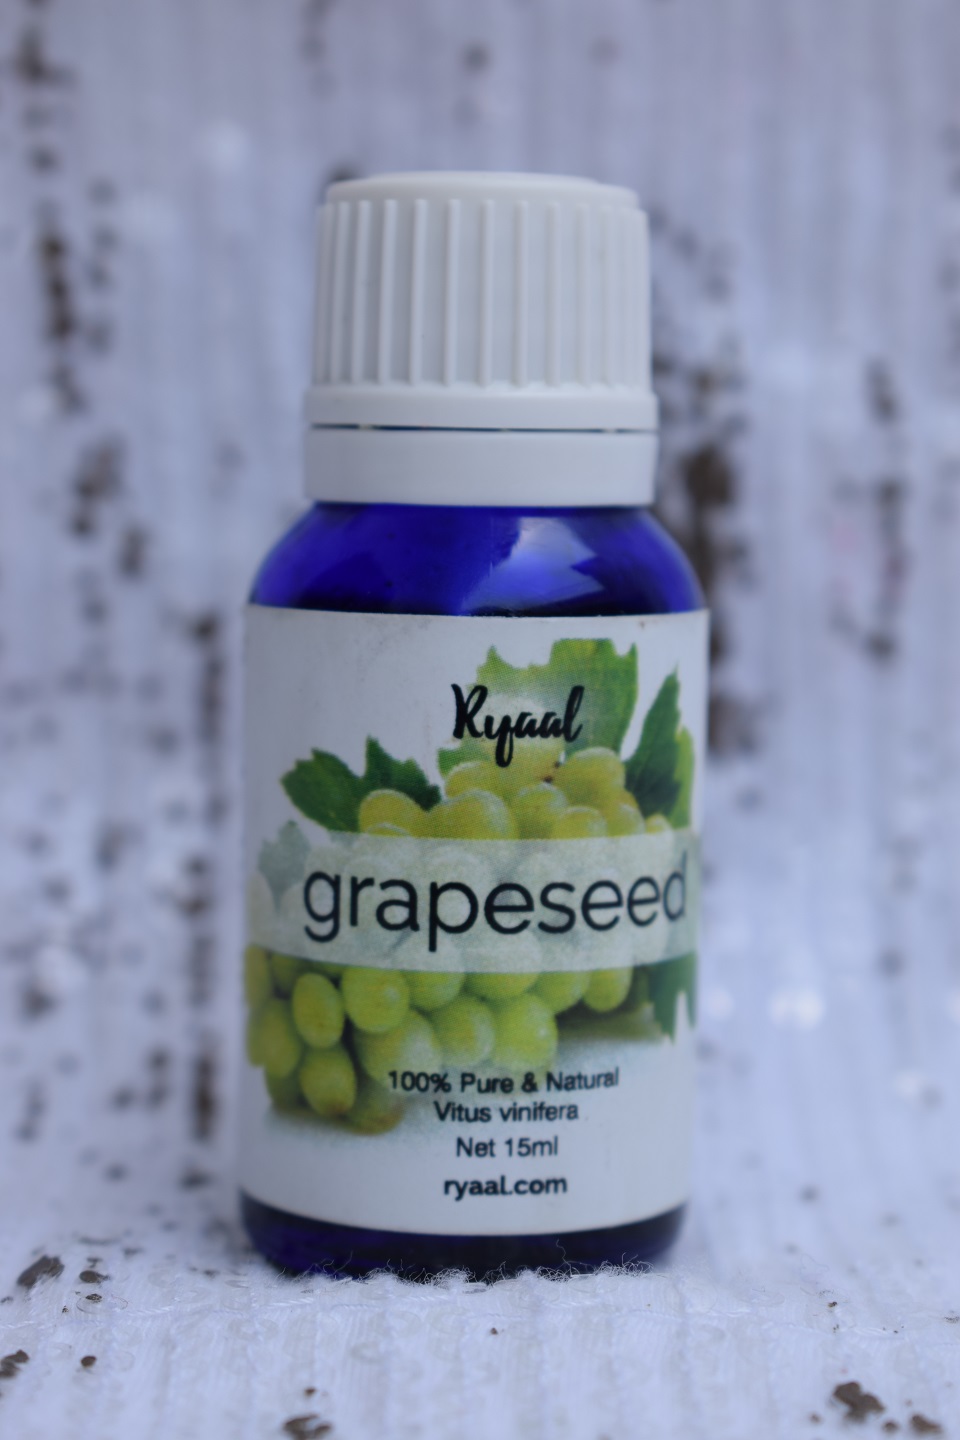 Ryaal GrapeSeed Oil (5)